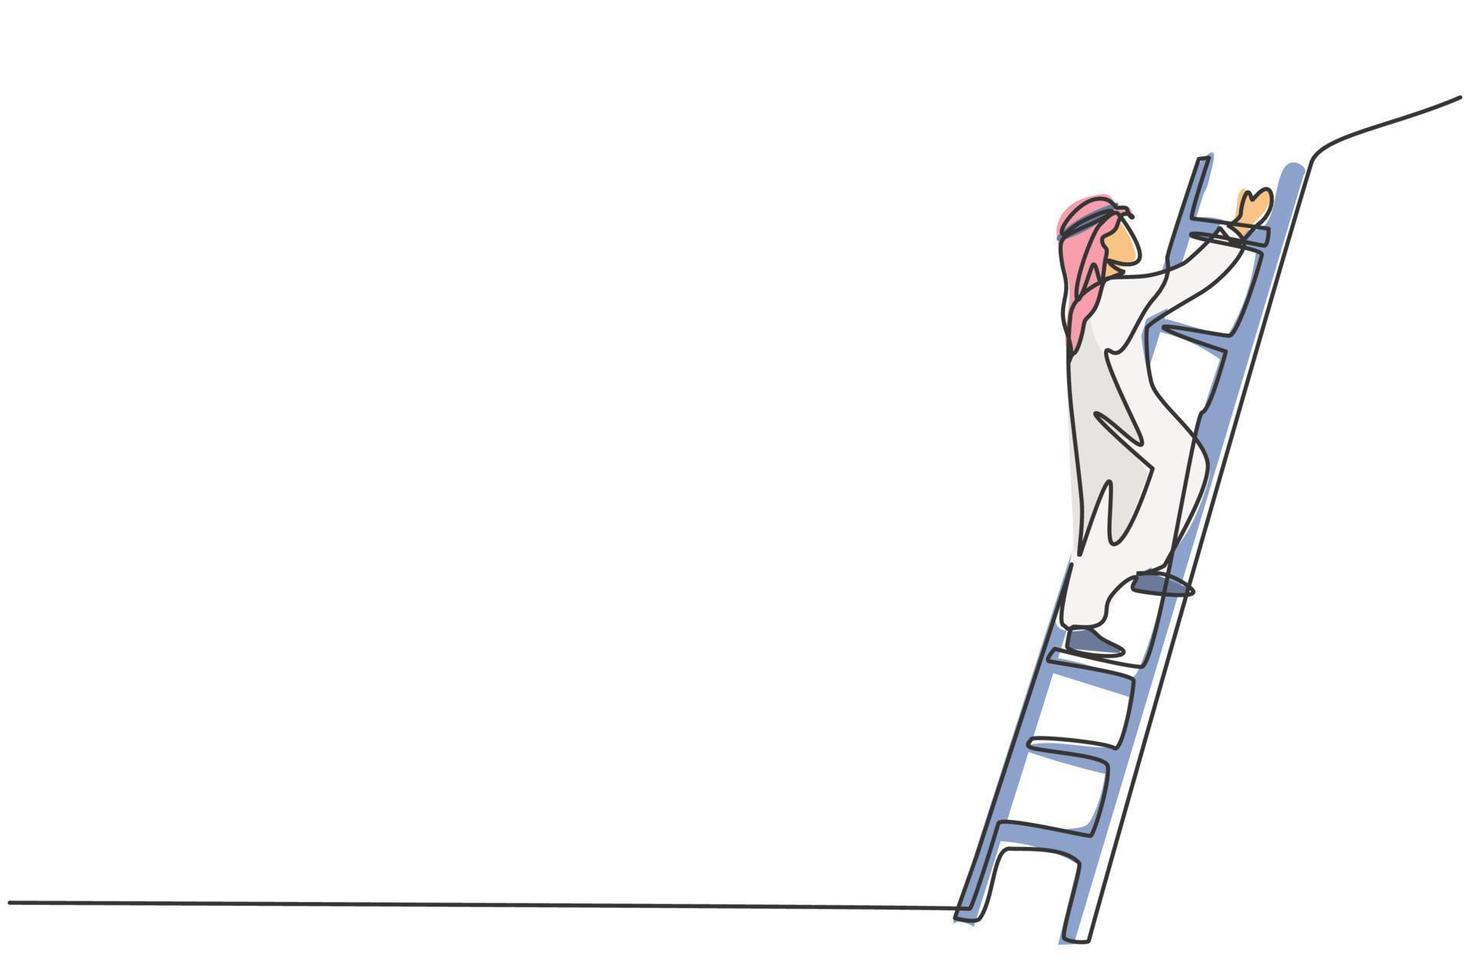 Kontinuierliche Zeichnung eines jungen arabischen Geschäftsmannes, die die Leiter hinaufklettert, um die Wand zu passieren. Business Solution Metapher minimalistisches Konzept. trendige Single-Line-Draw-Design-Vektorgrafik-Illustration vektor